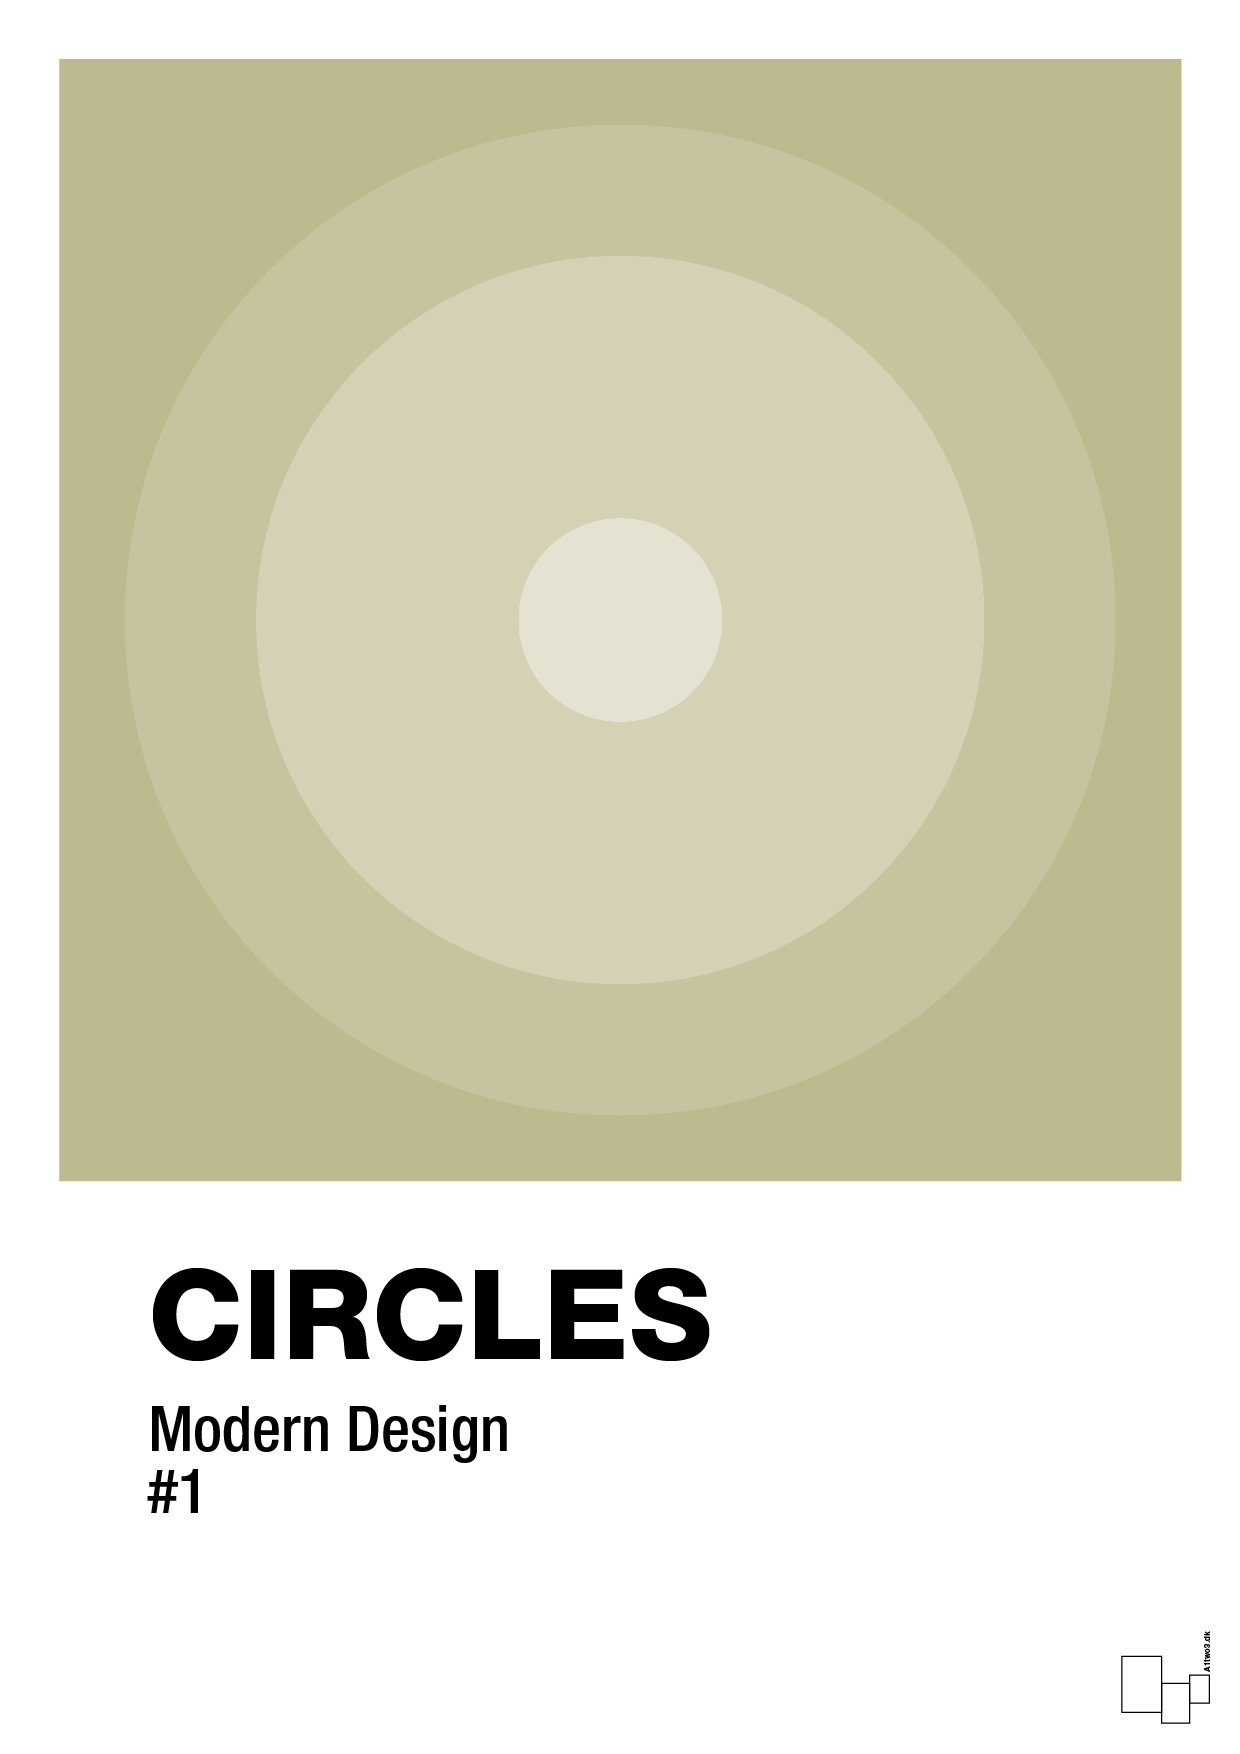 circles #1 - Plakat med Grafik i Back to Nature